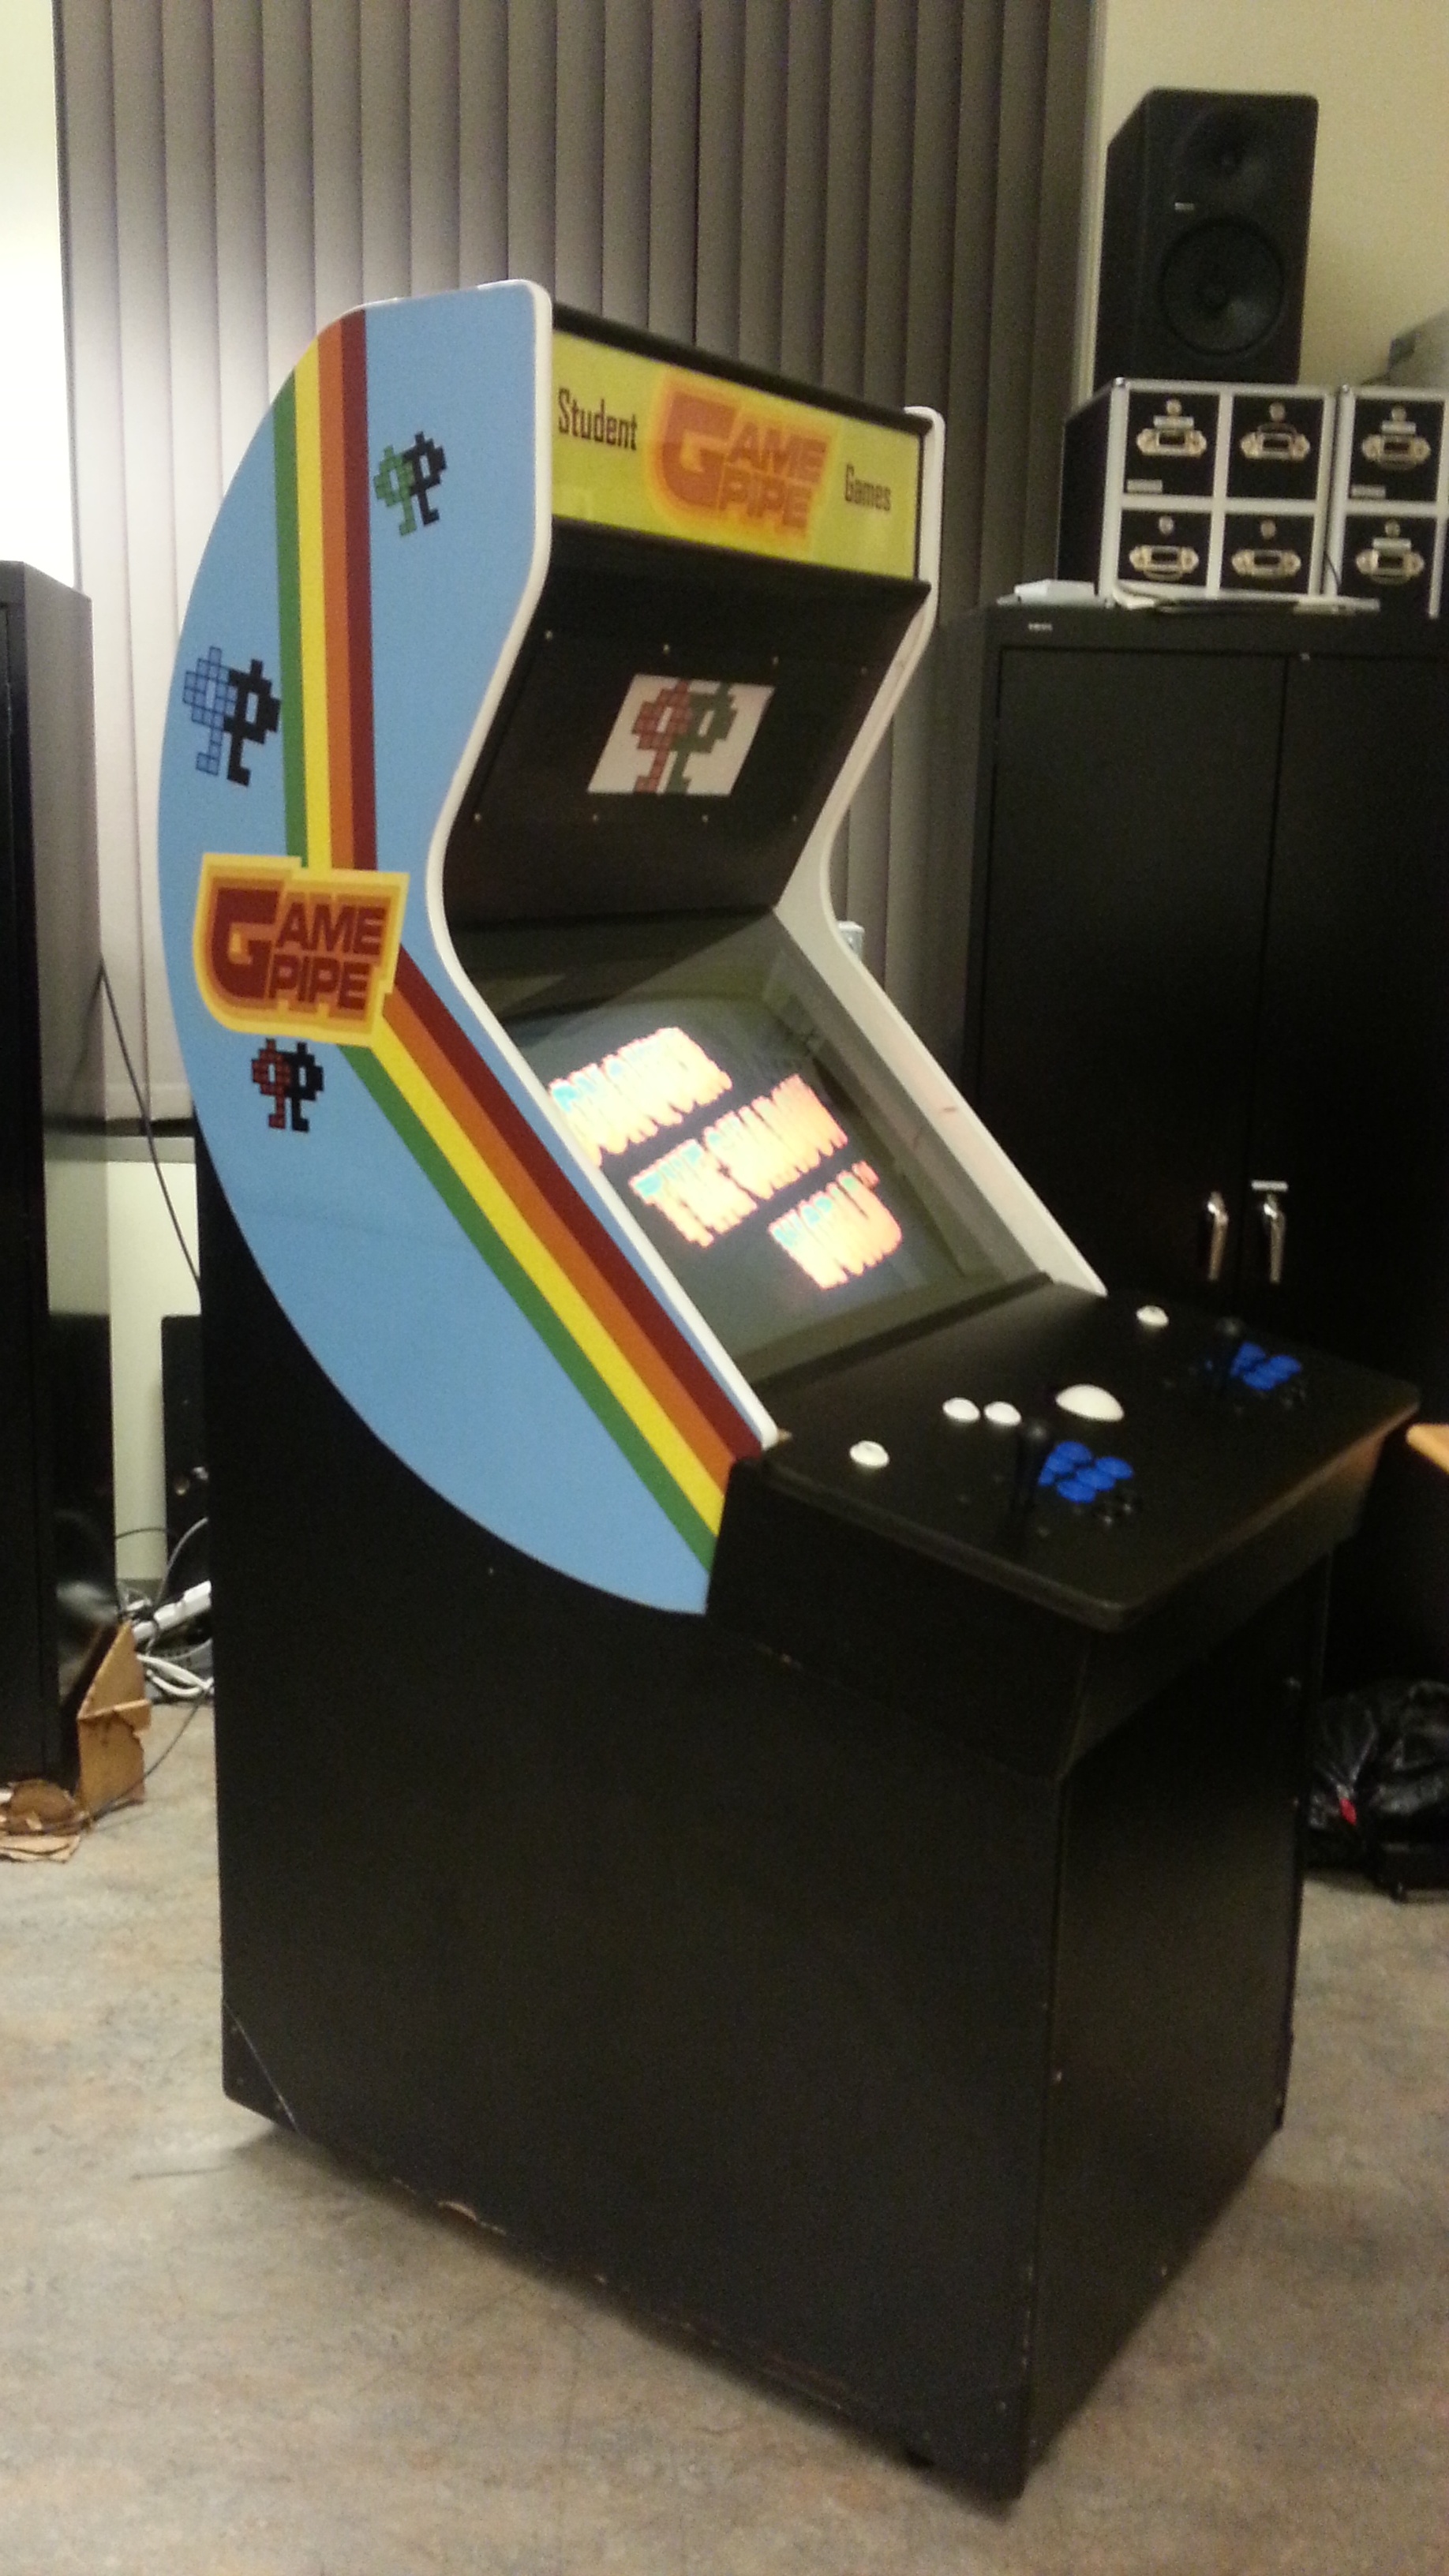 USC Gamepipe Arcade